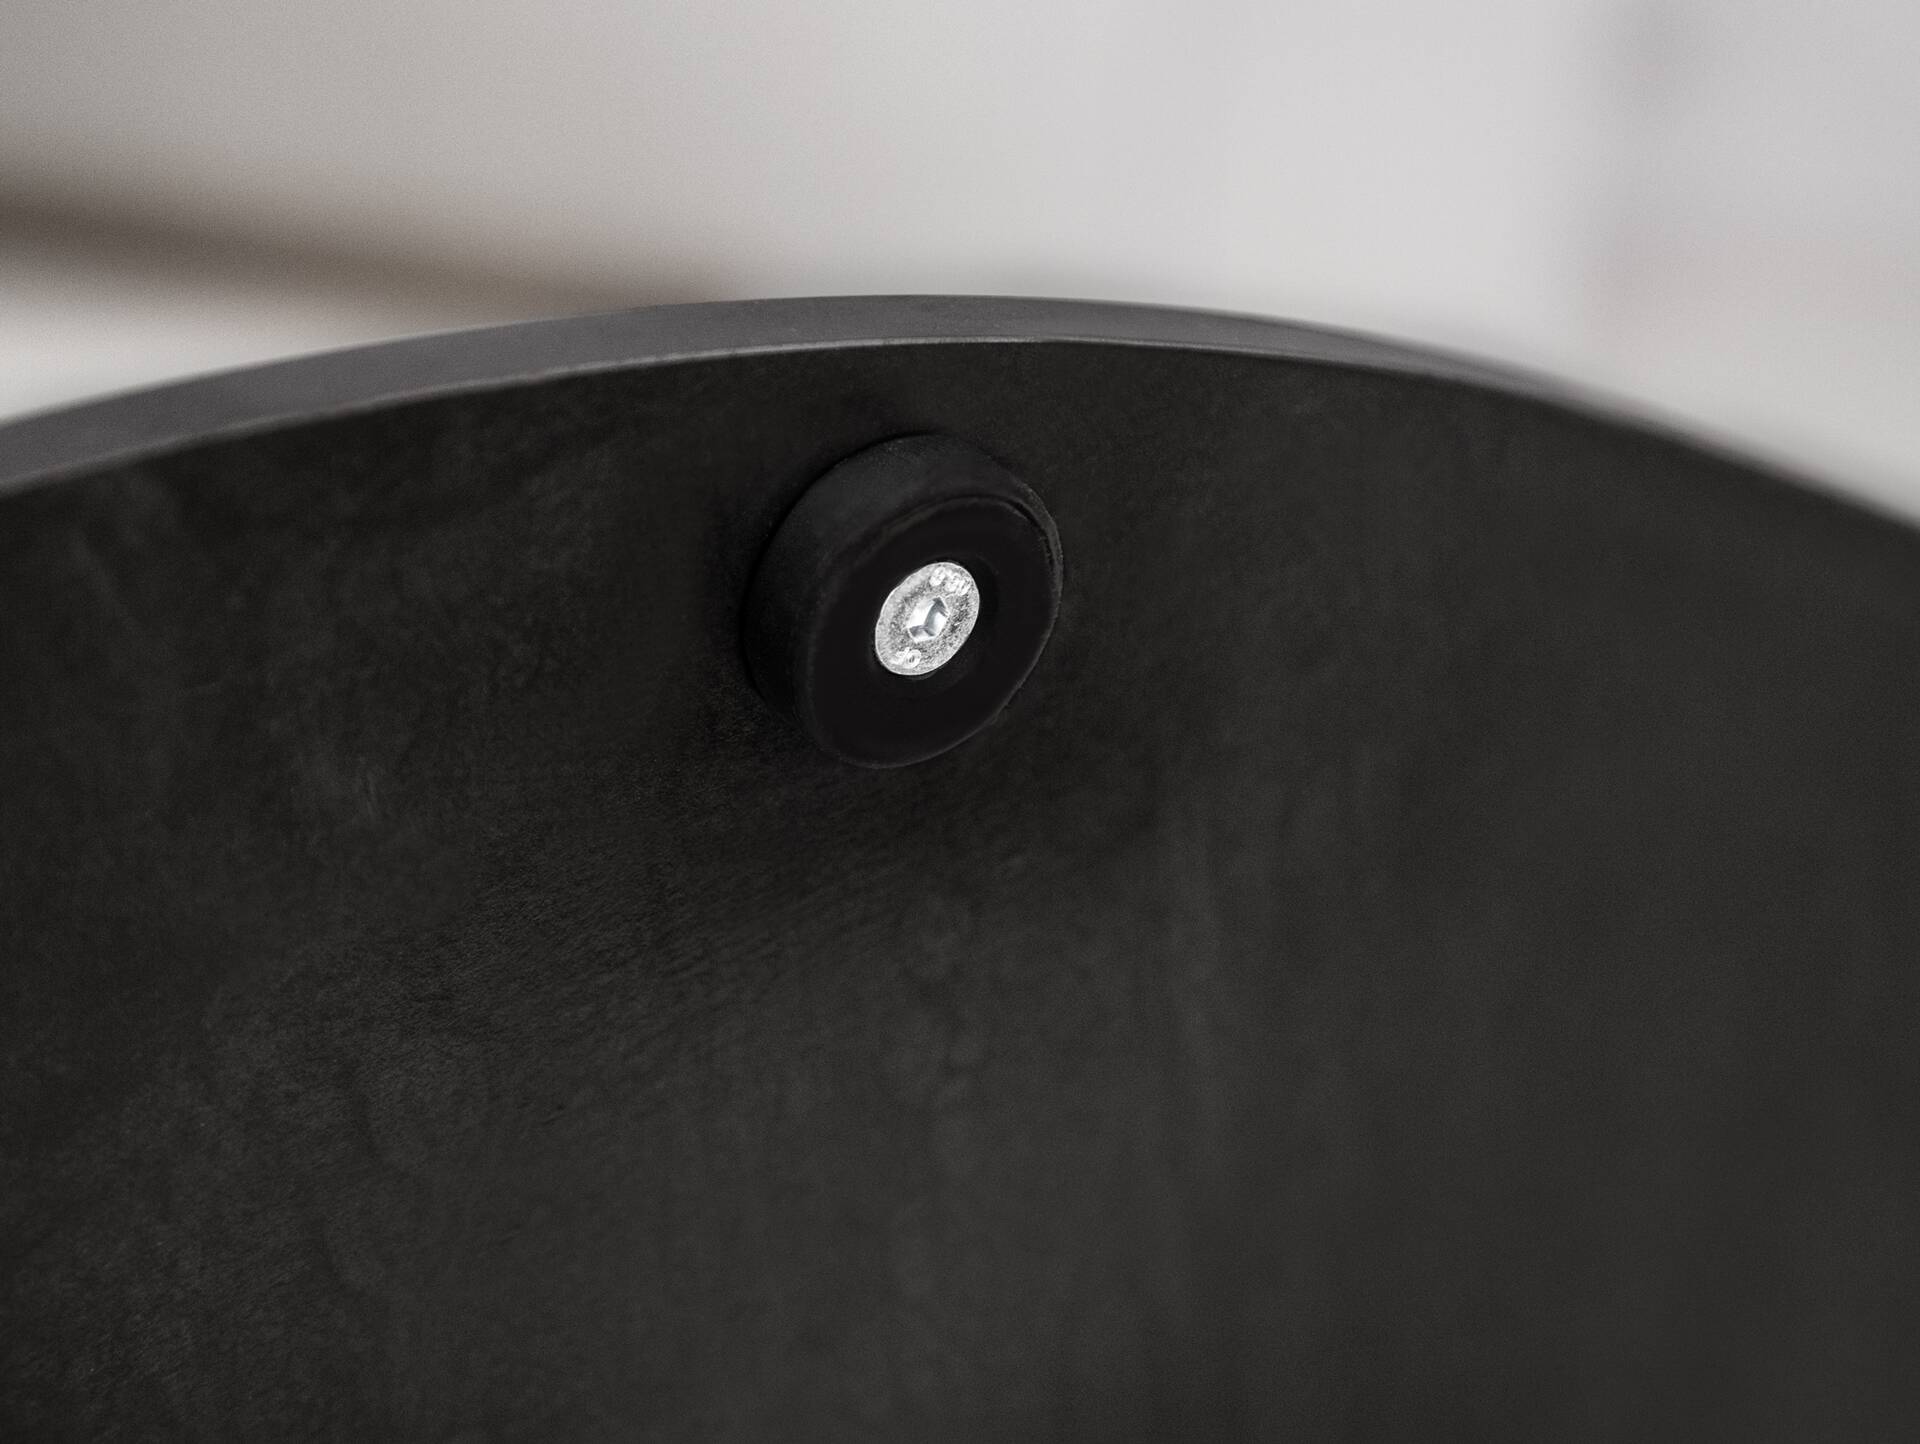 Tischgestell für GASTRO Esstisch rund, Material Stahl, schwarz 55 cm